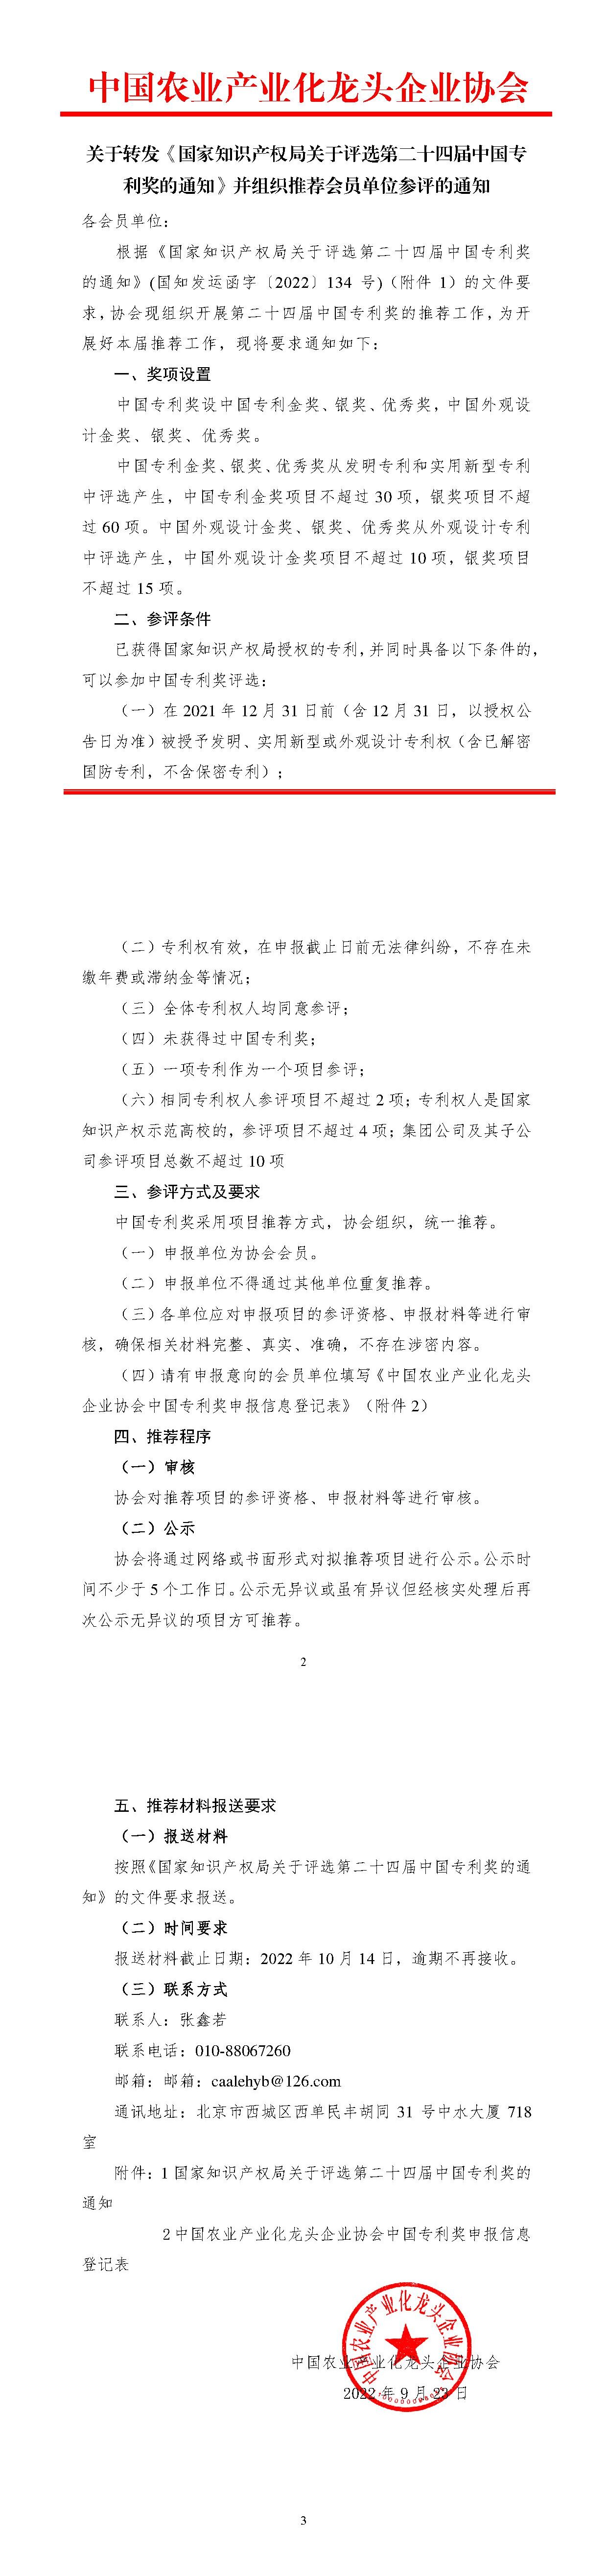 关于转发《国家知识产权局关于评选第二十四届中国专利奖的通知》并组织推荐会员单位参评的通知-tiomg-append-image.jpg